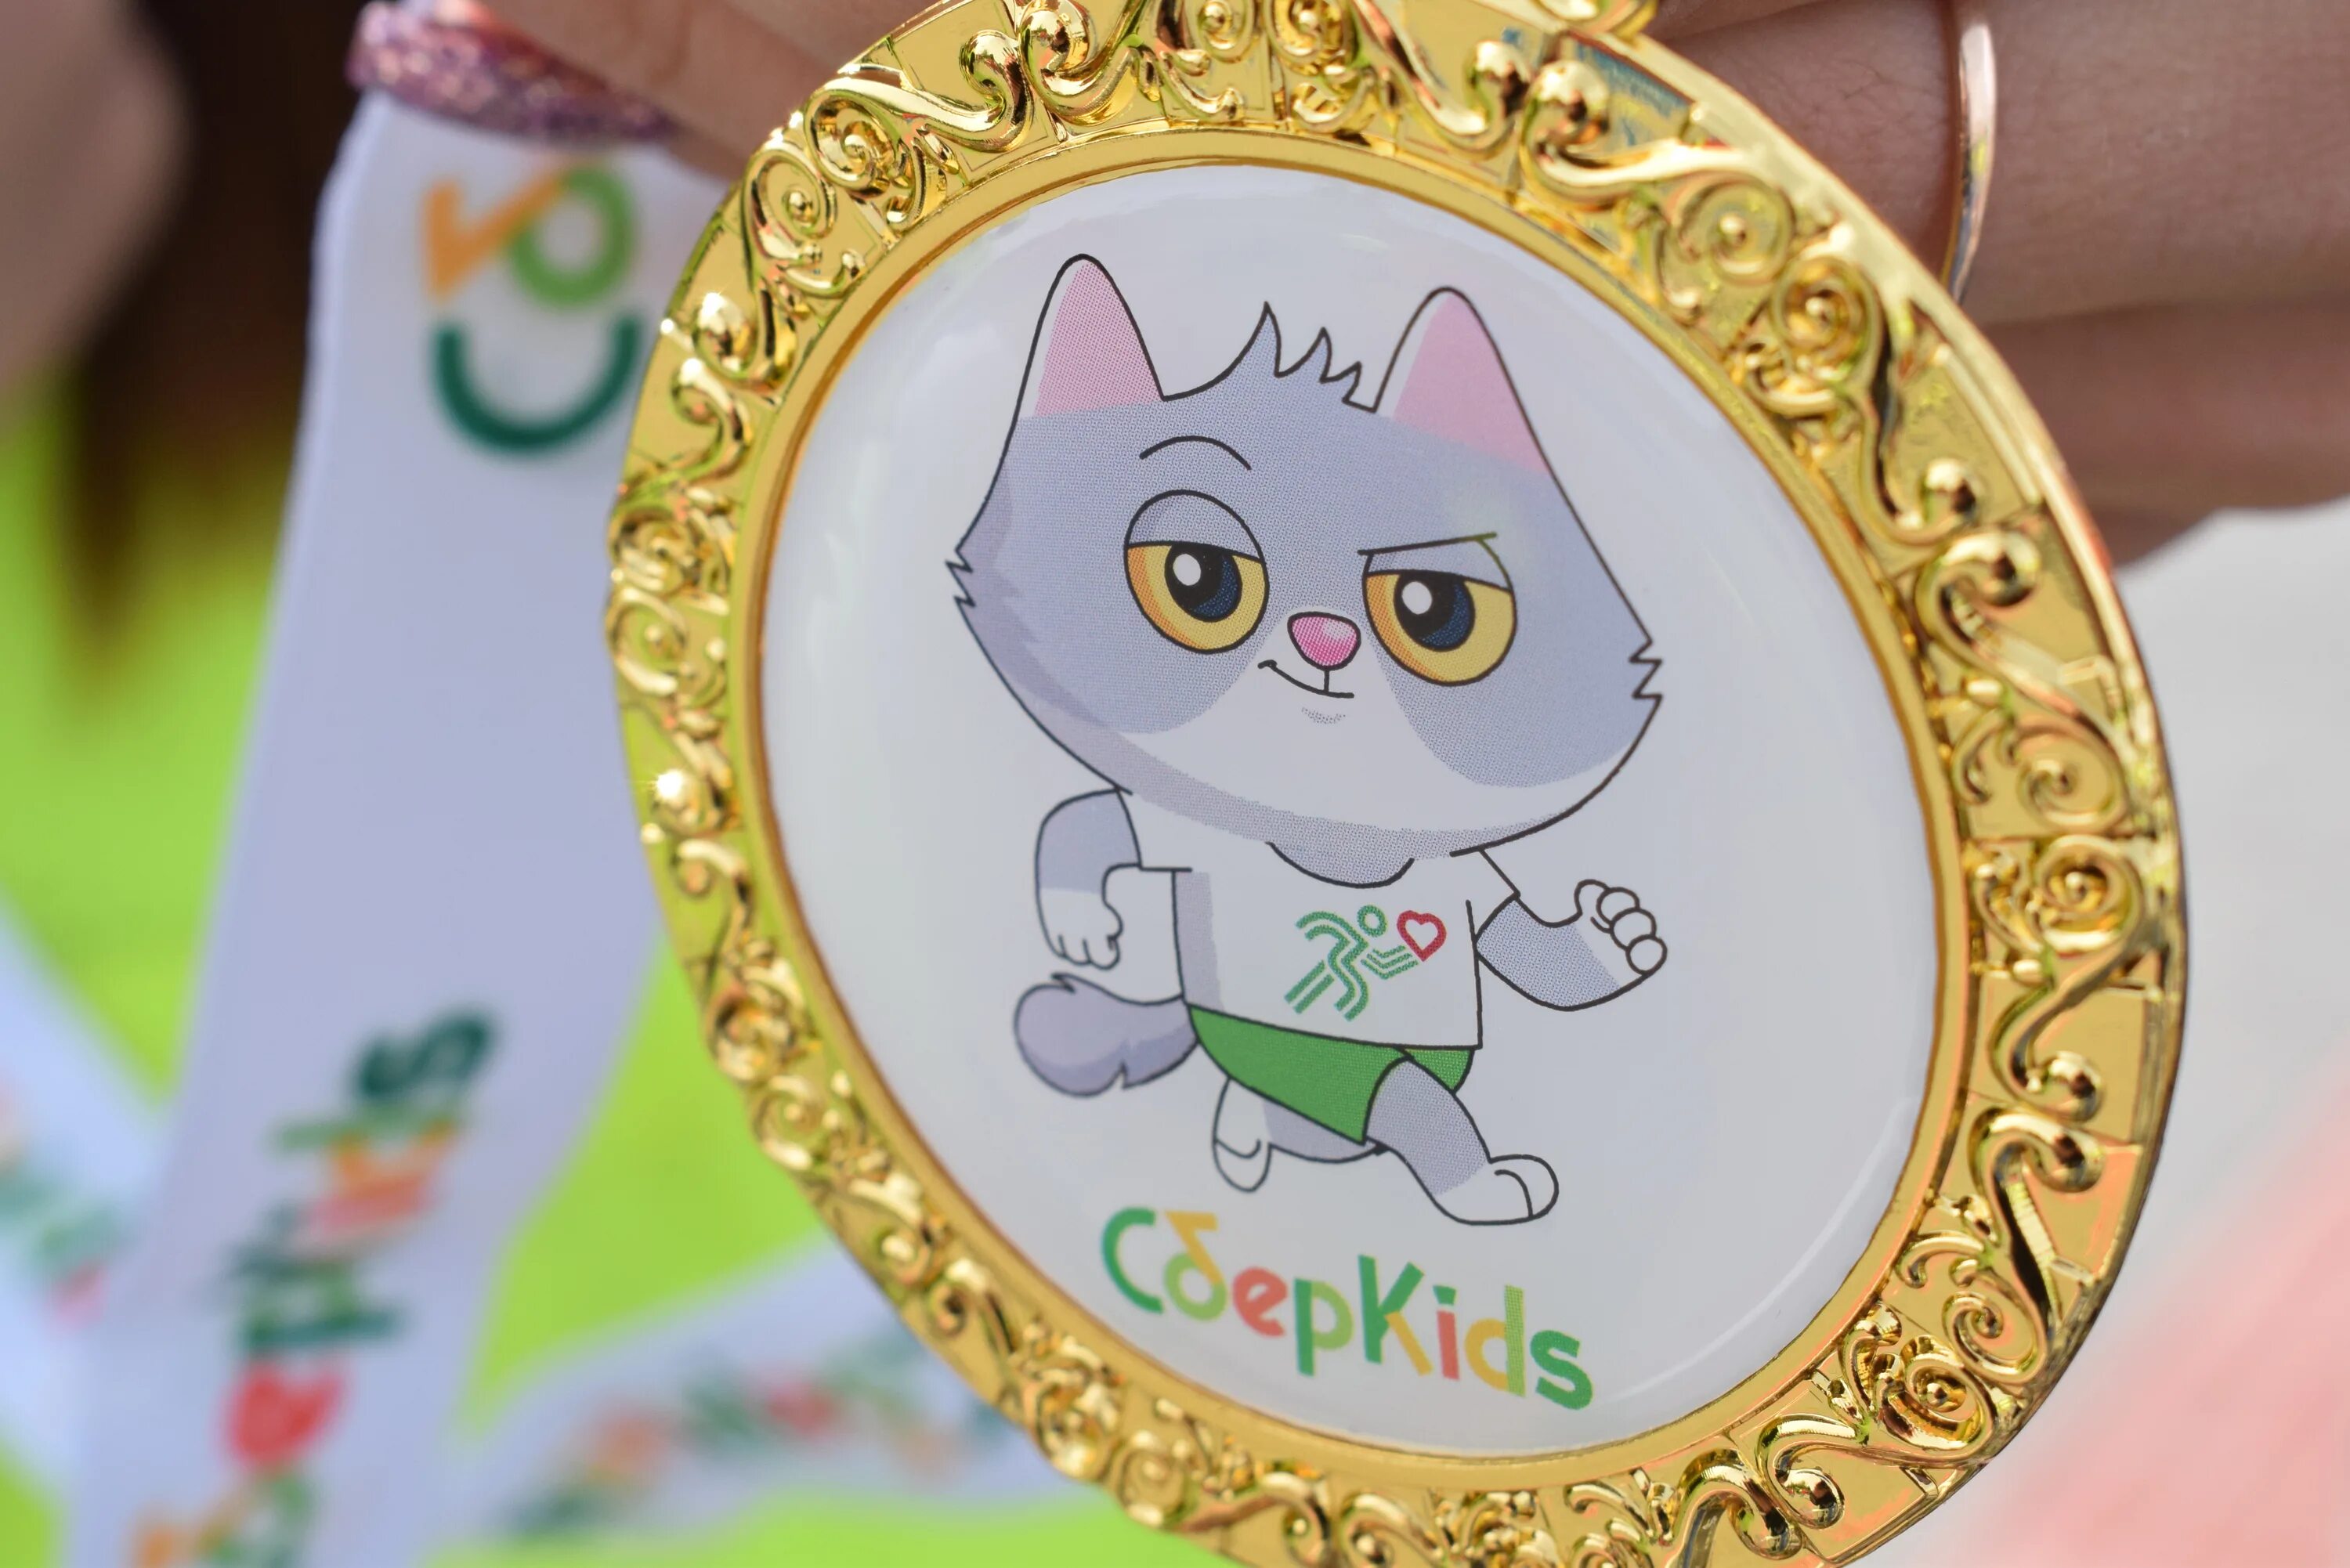 Сберкидс спасибо. Котик с медалькой. Карта СБЕРКИДС С котом. Зеленая медаль. Медаль на детский забег.